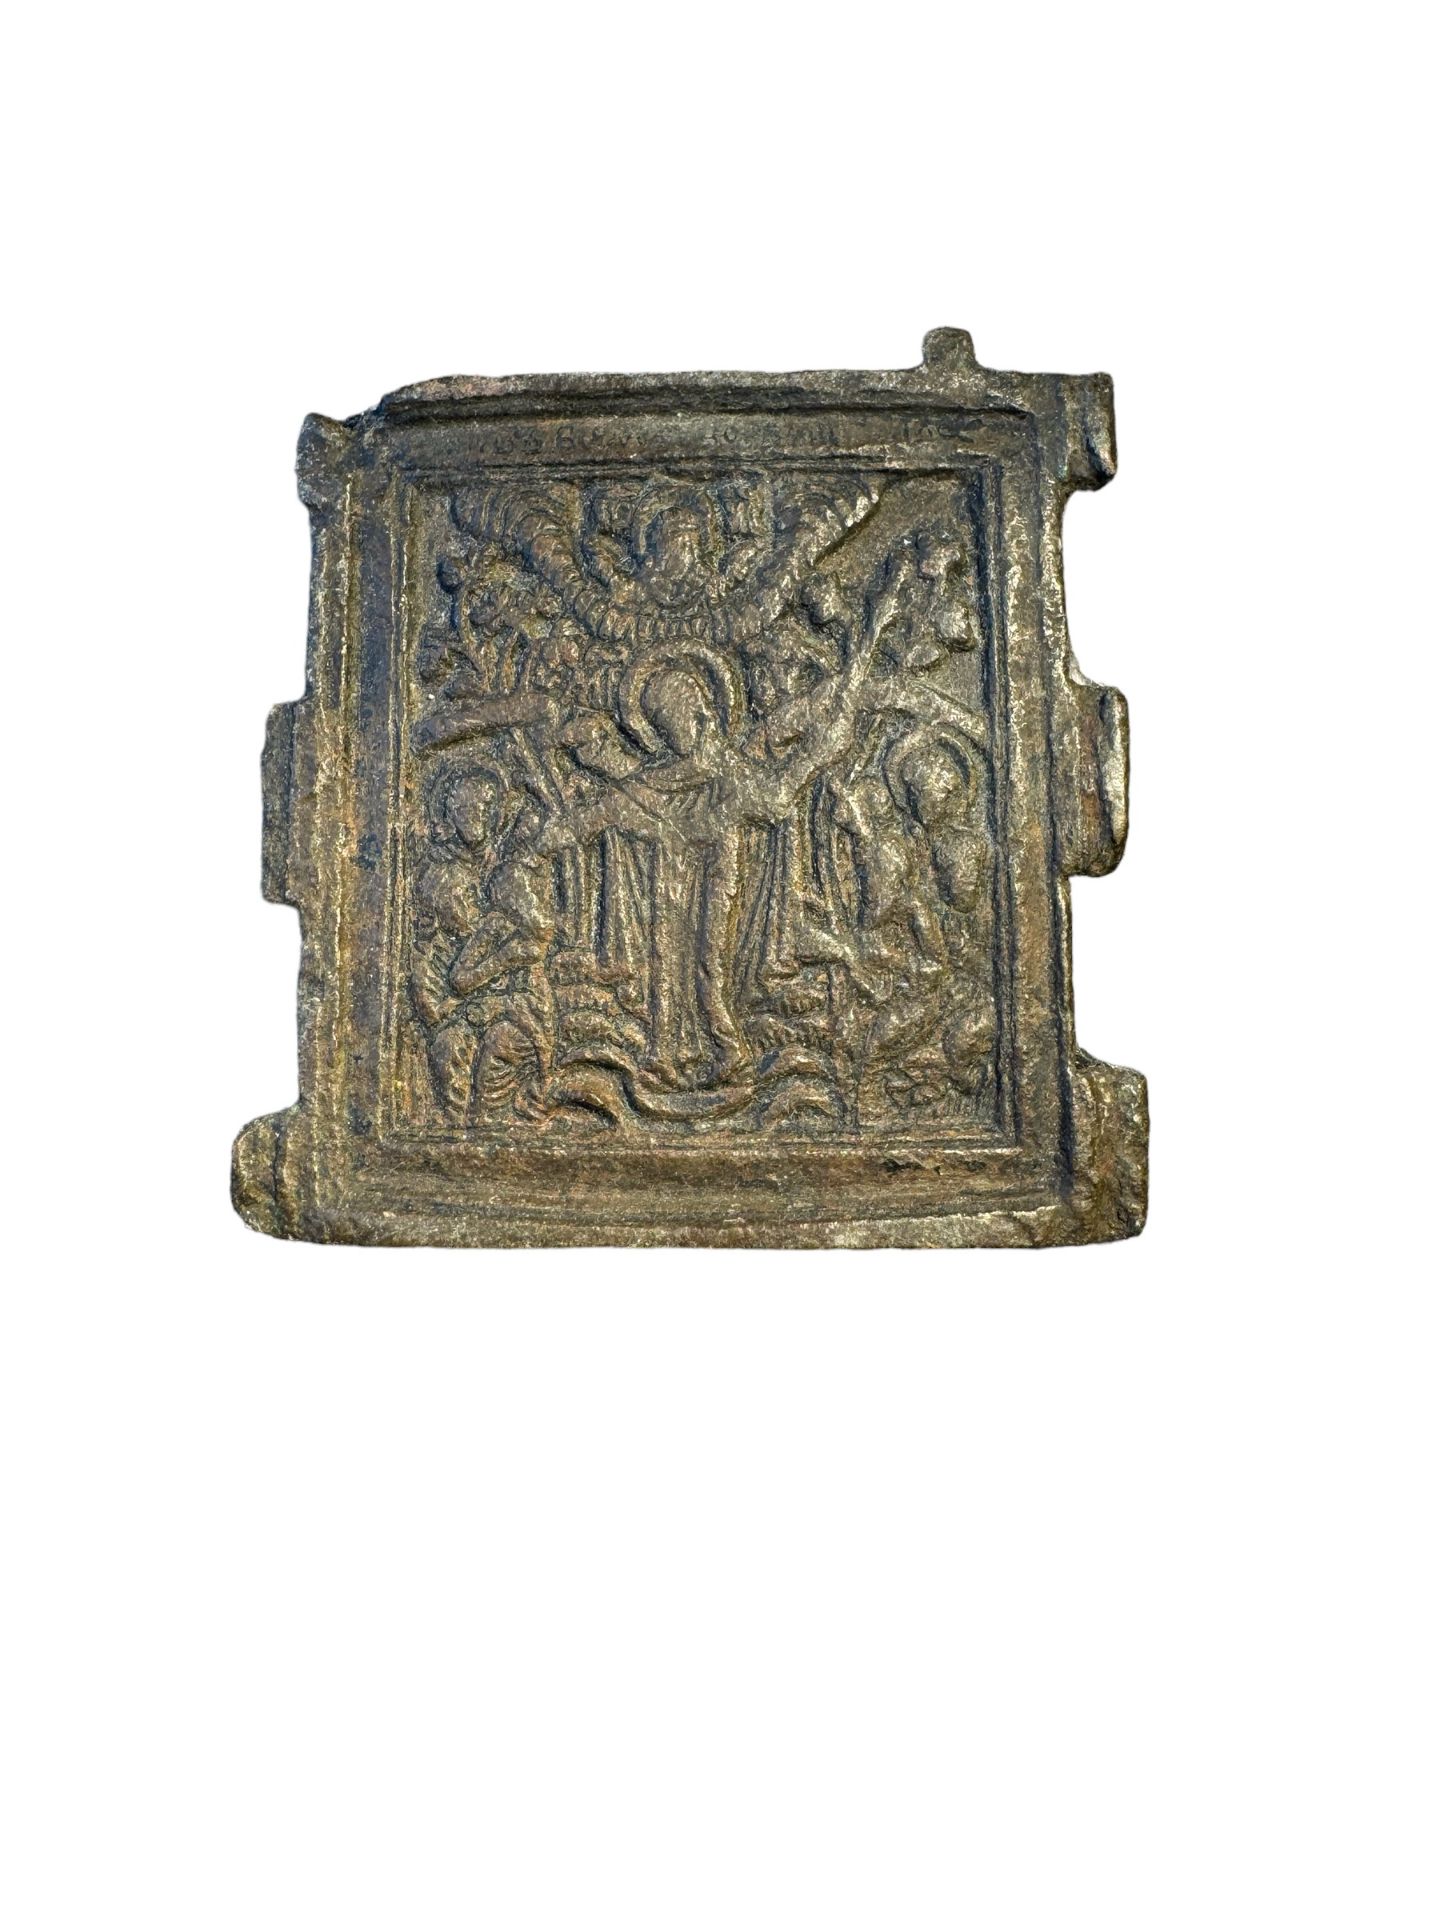 Antiquities: 17th-18th Century Bronze Orthodox Reliquary £5 UK Post £15 International